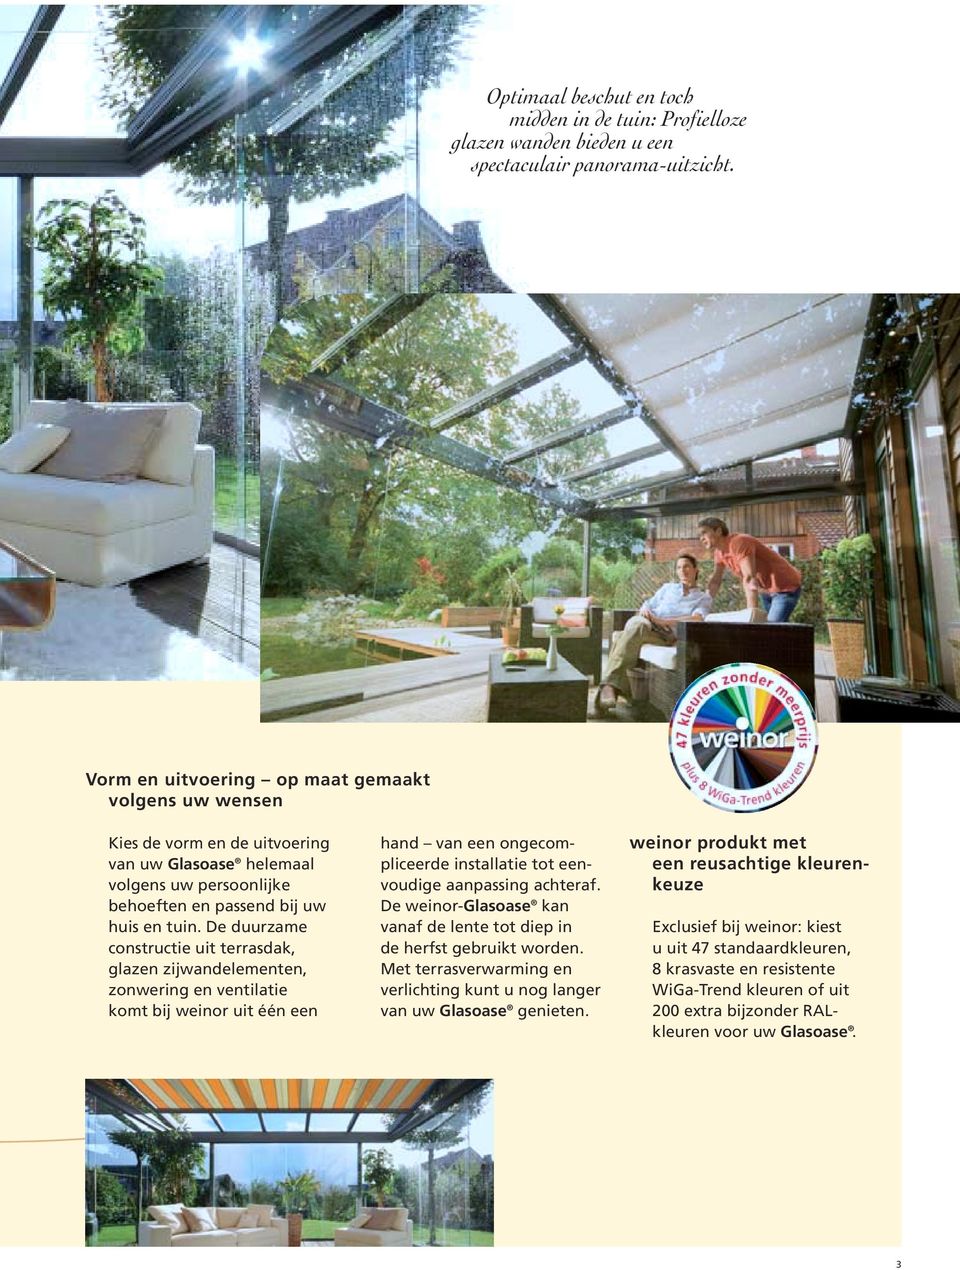 De duurzame constructie uit terrasdak, glazen zijwandelementen, zonwering en ventilatie komt bij weinor uit één een hand van een ongecompliceerde installatie tot eenvoudige aanpassing achteraf.